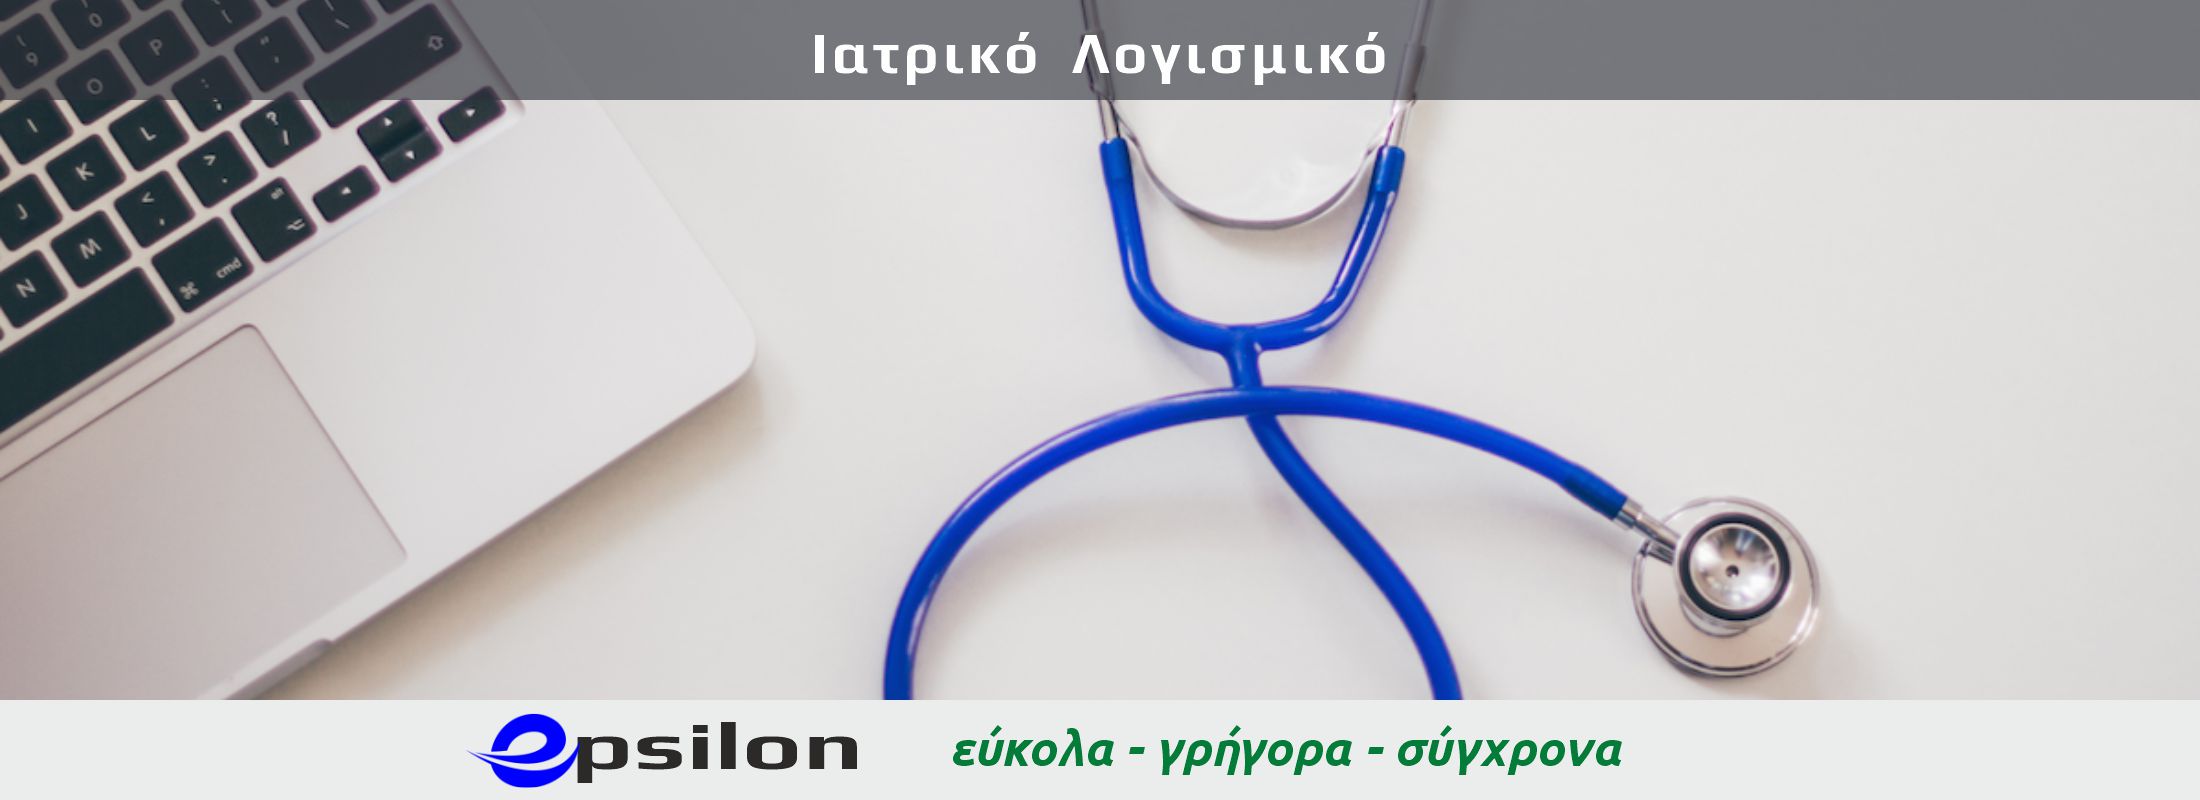 Ιατρικό Λογισμικό - Epsilon computers